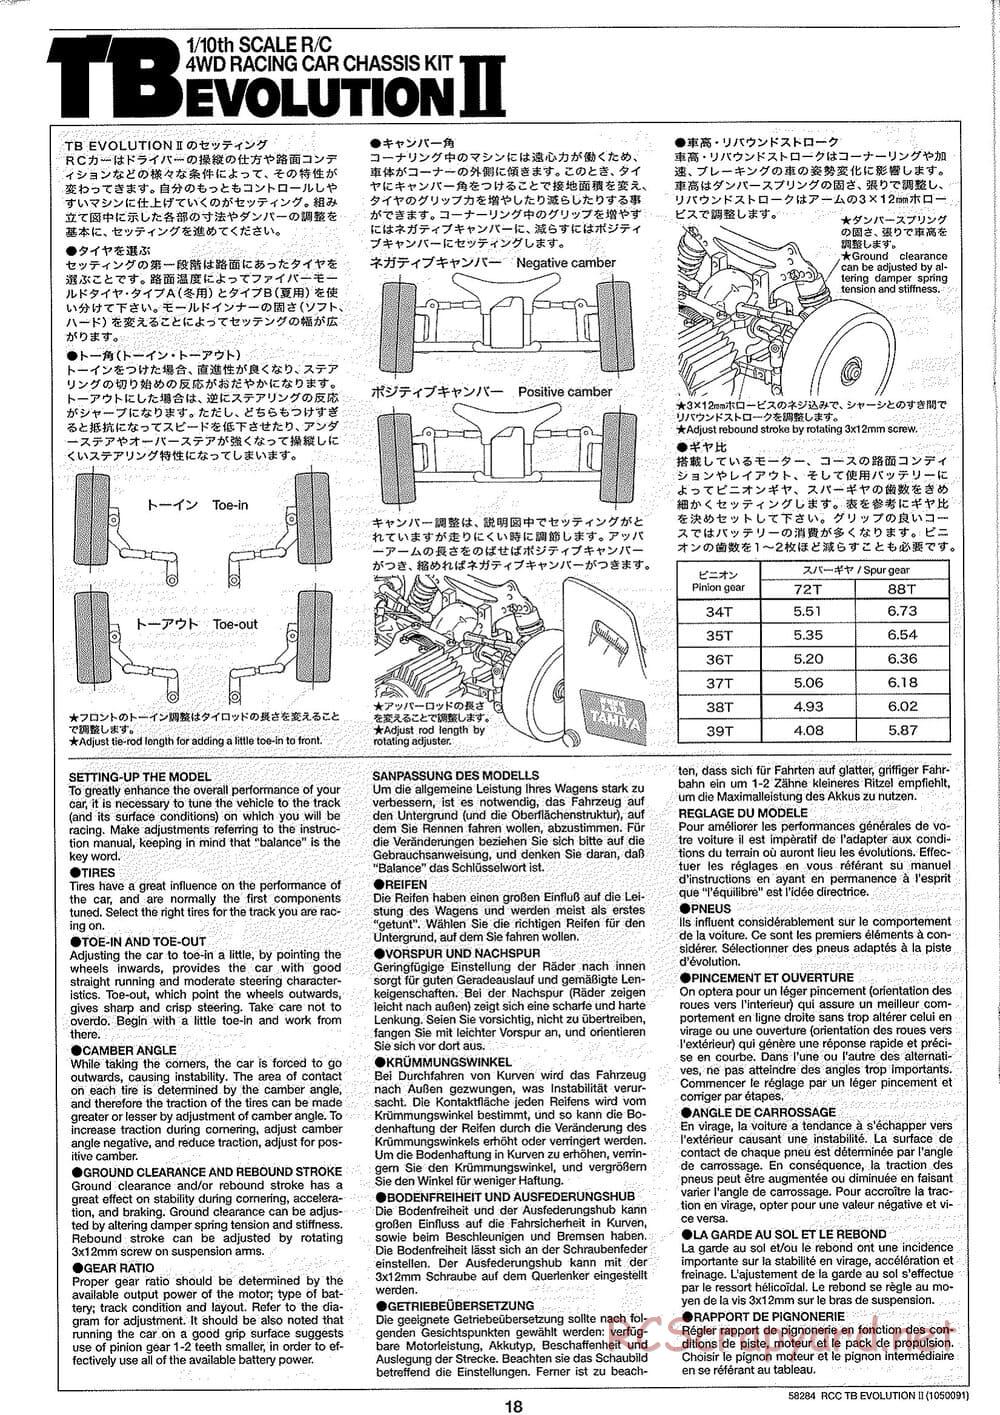 Tamiya - TB Evolution II Chassis - Manual - Page 18